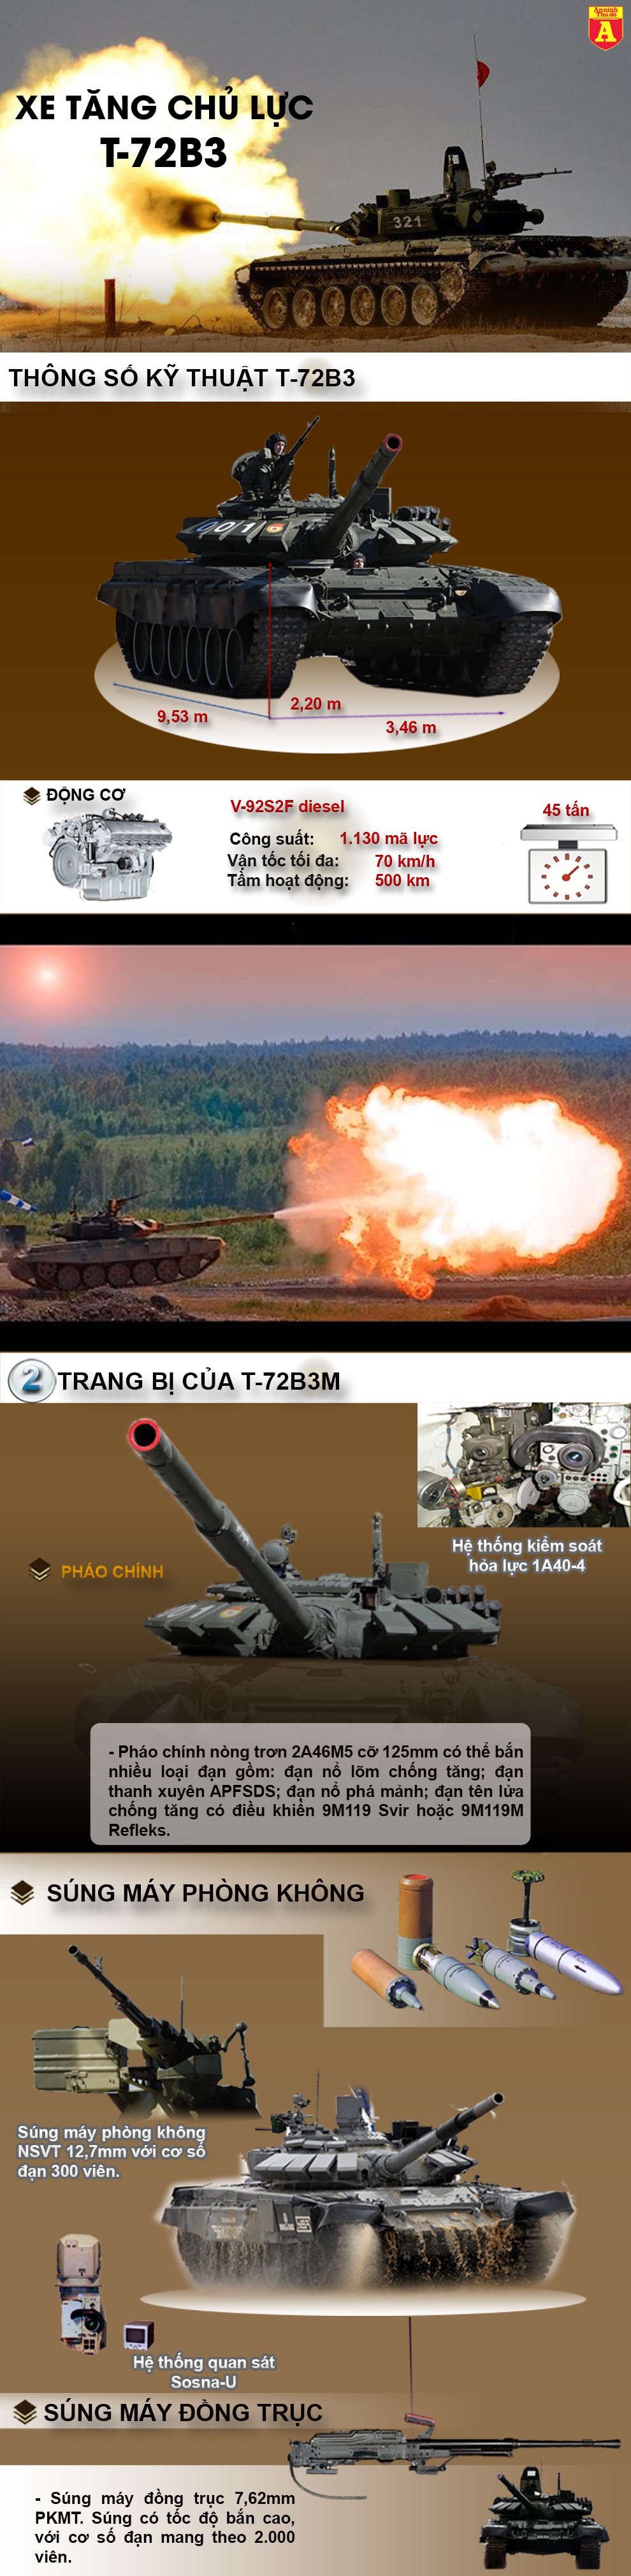 [Infographic] Nga triển khai xe tăng mạnh nhất của dòng T-72 cho Syria để tấn công IS ảnh 2